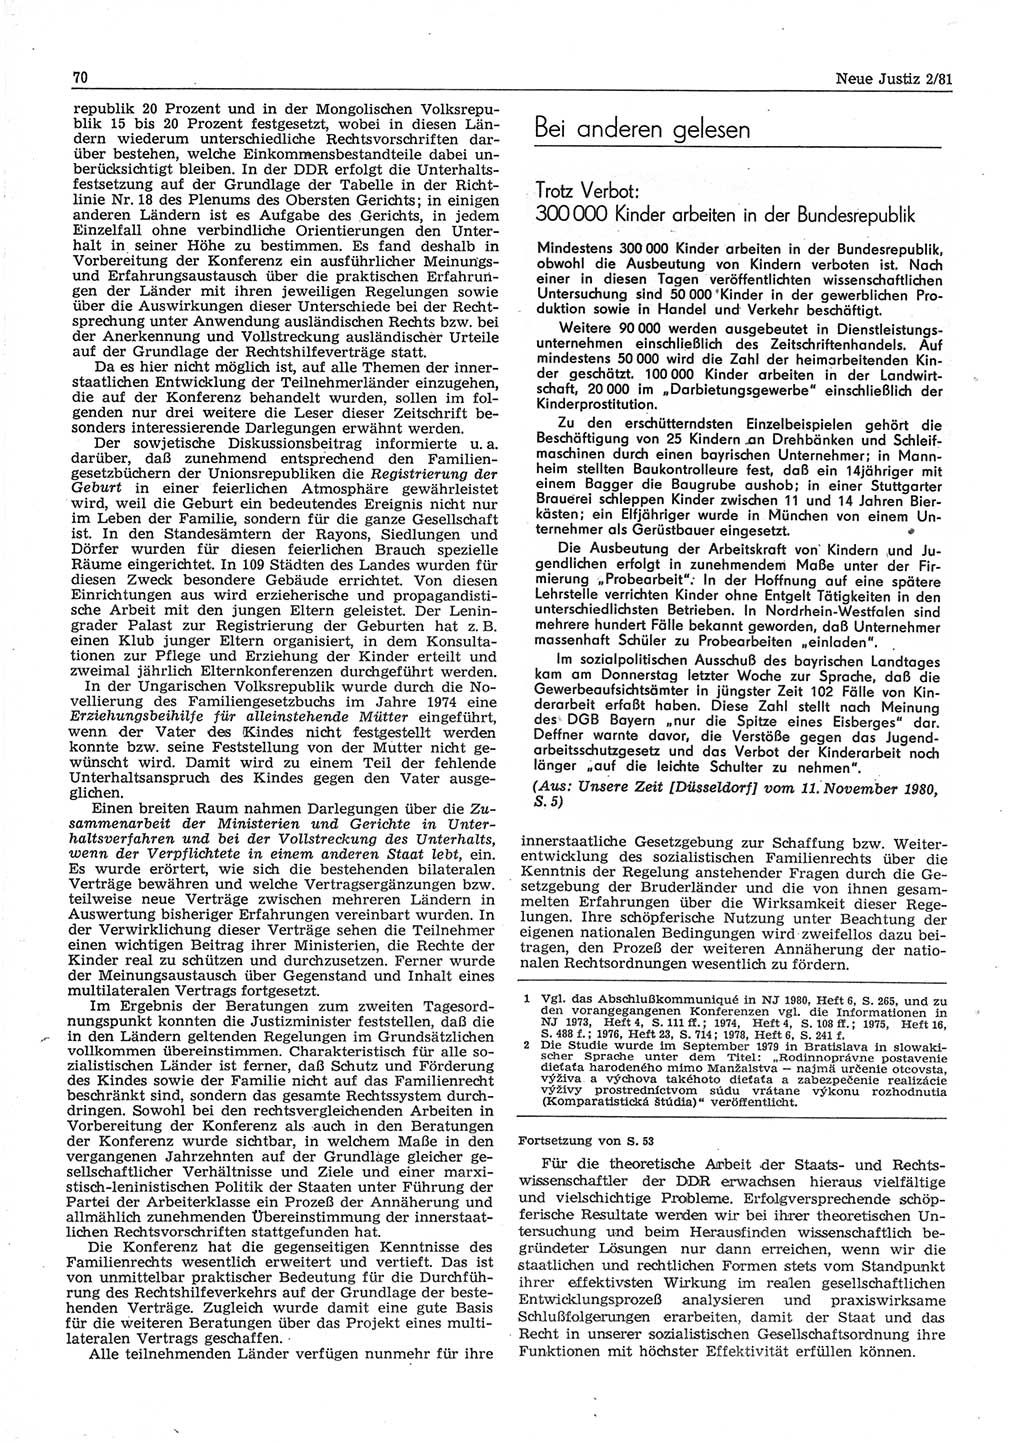 Neue Justiz (NJ), Zeitschrift für sozialistisches Recht und Gesetzlichkeit [Deutsche Demokratische Republik (DDR)], 35. Jahrgang 1981, Seite 70 (NJ DDR 1981, S. 70)